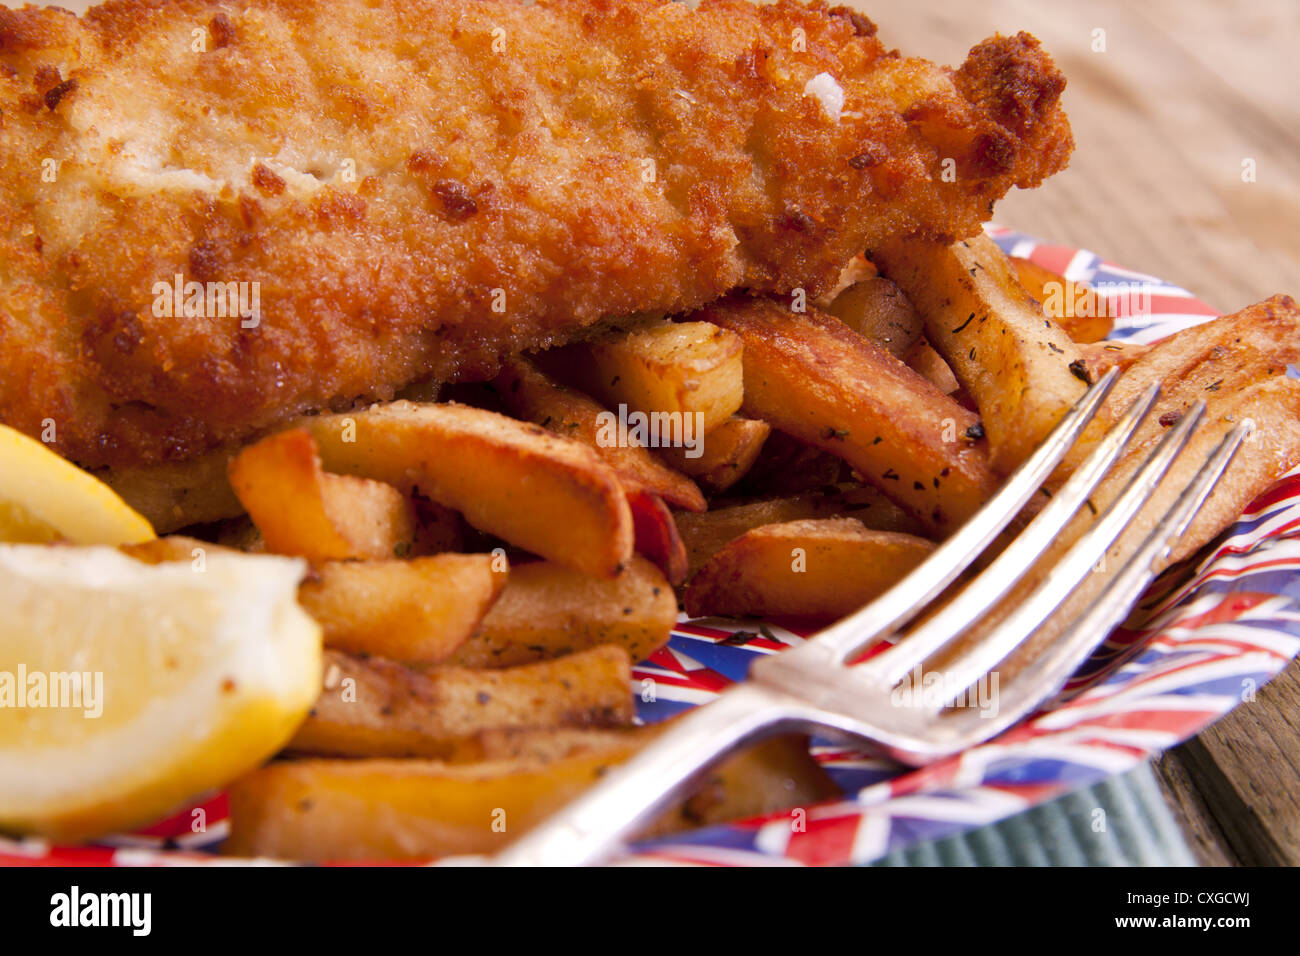 British fish and chips. Stock Photo